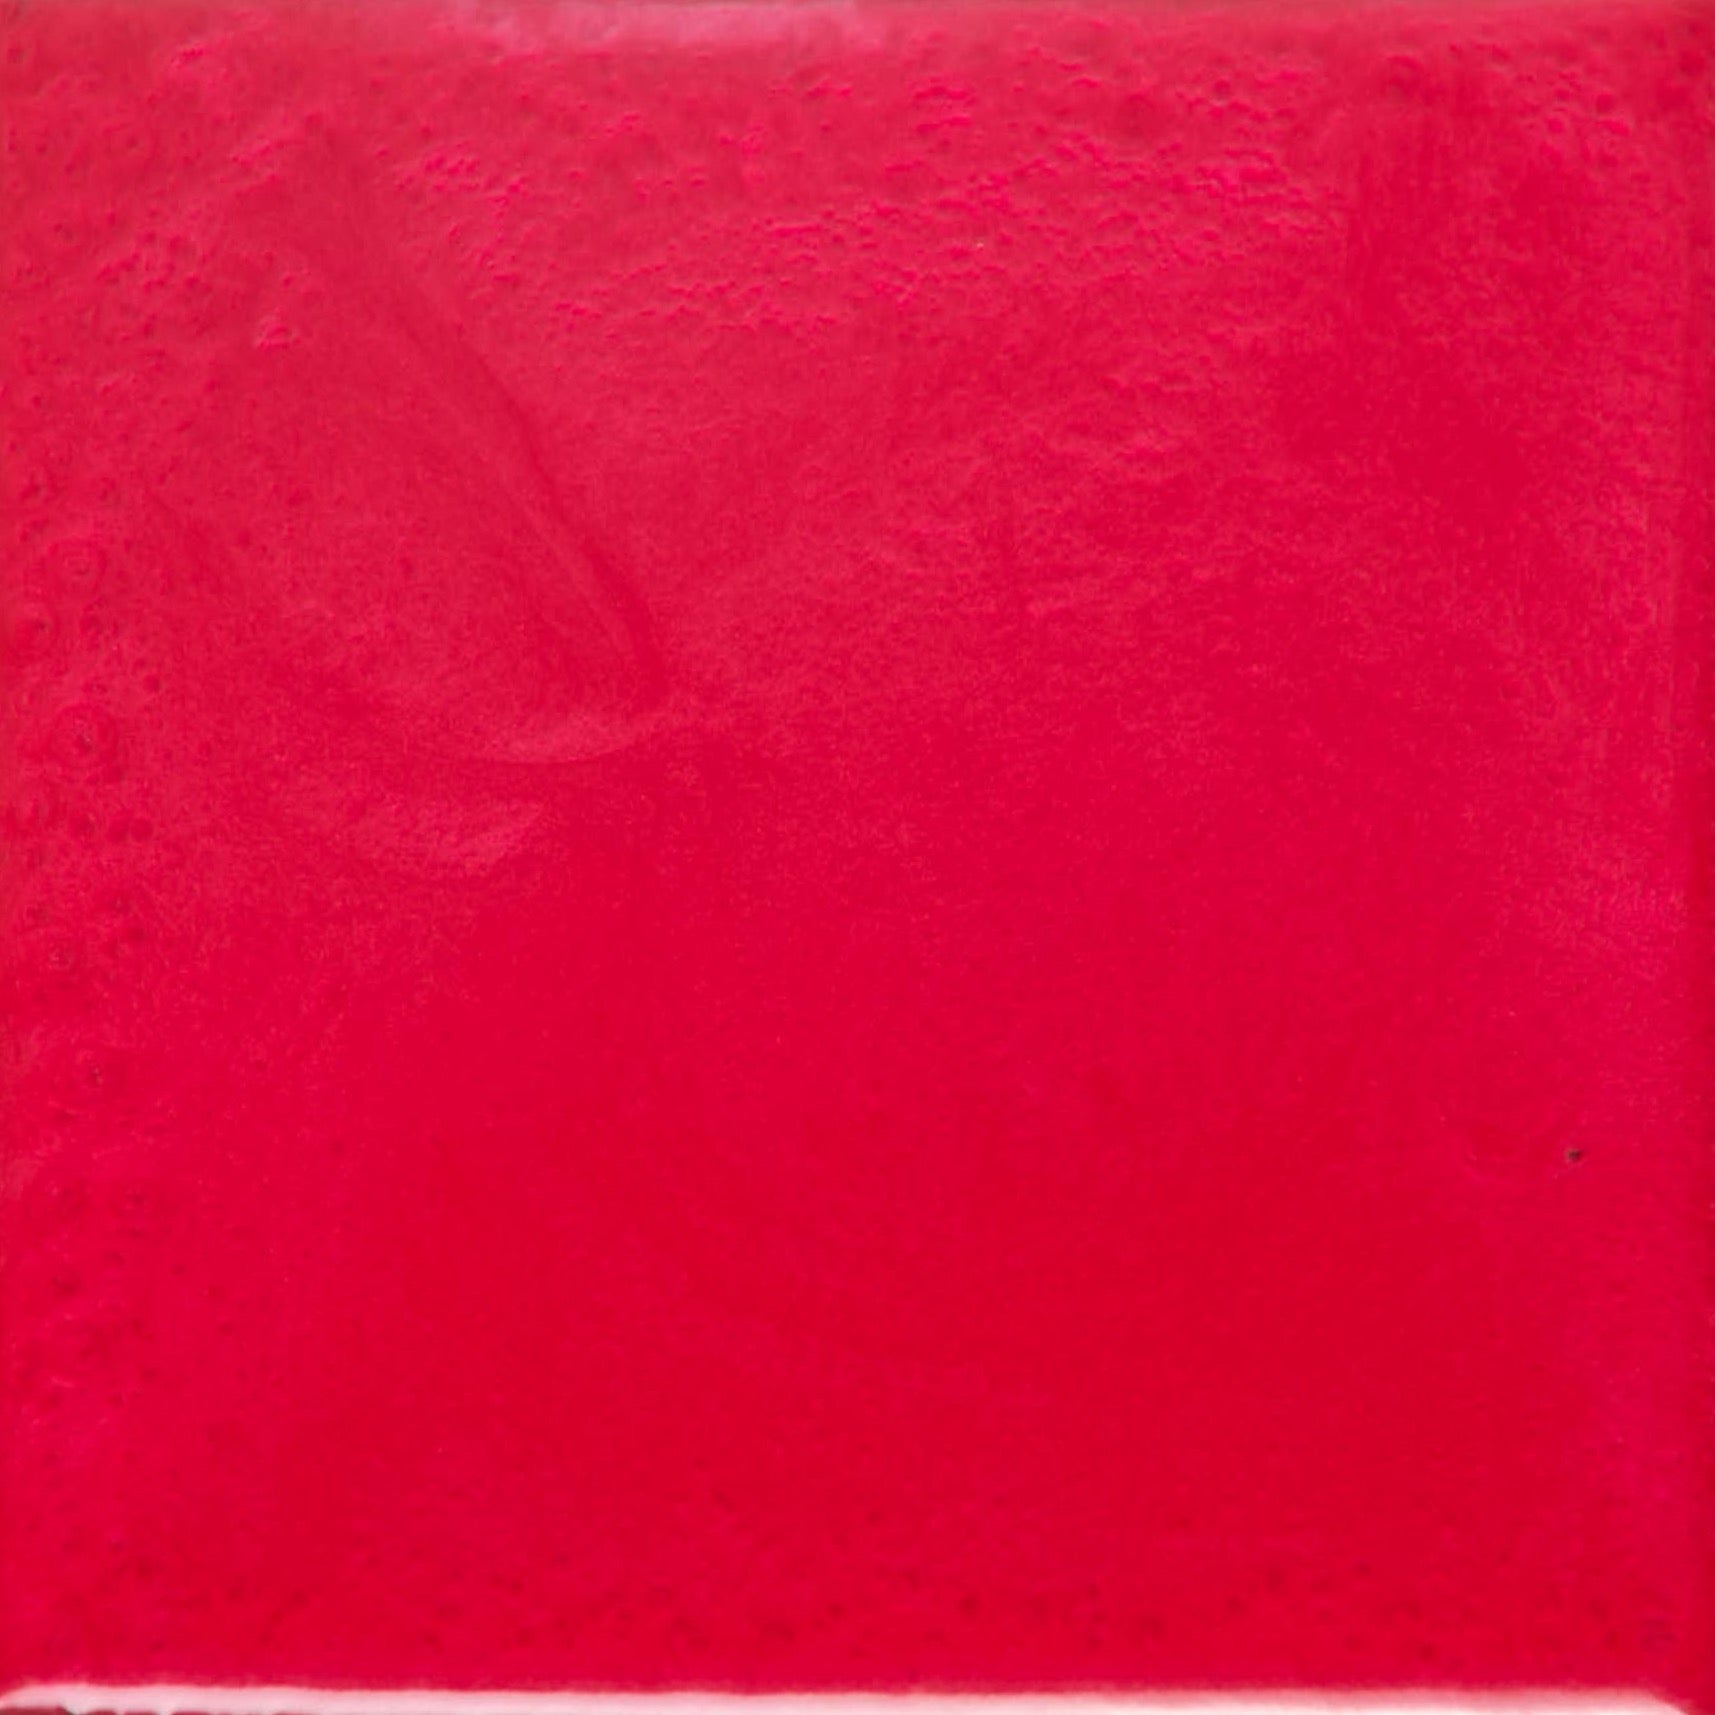 red epoxy resin pigment.